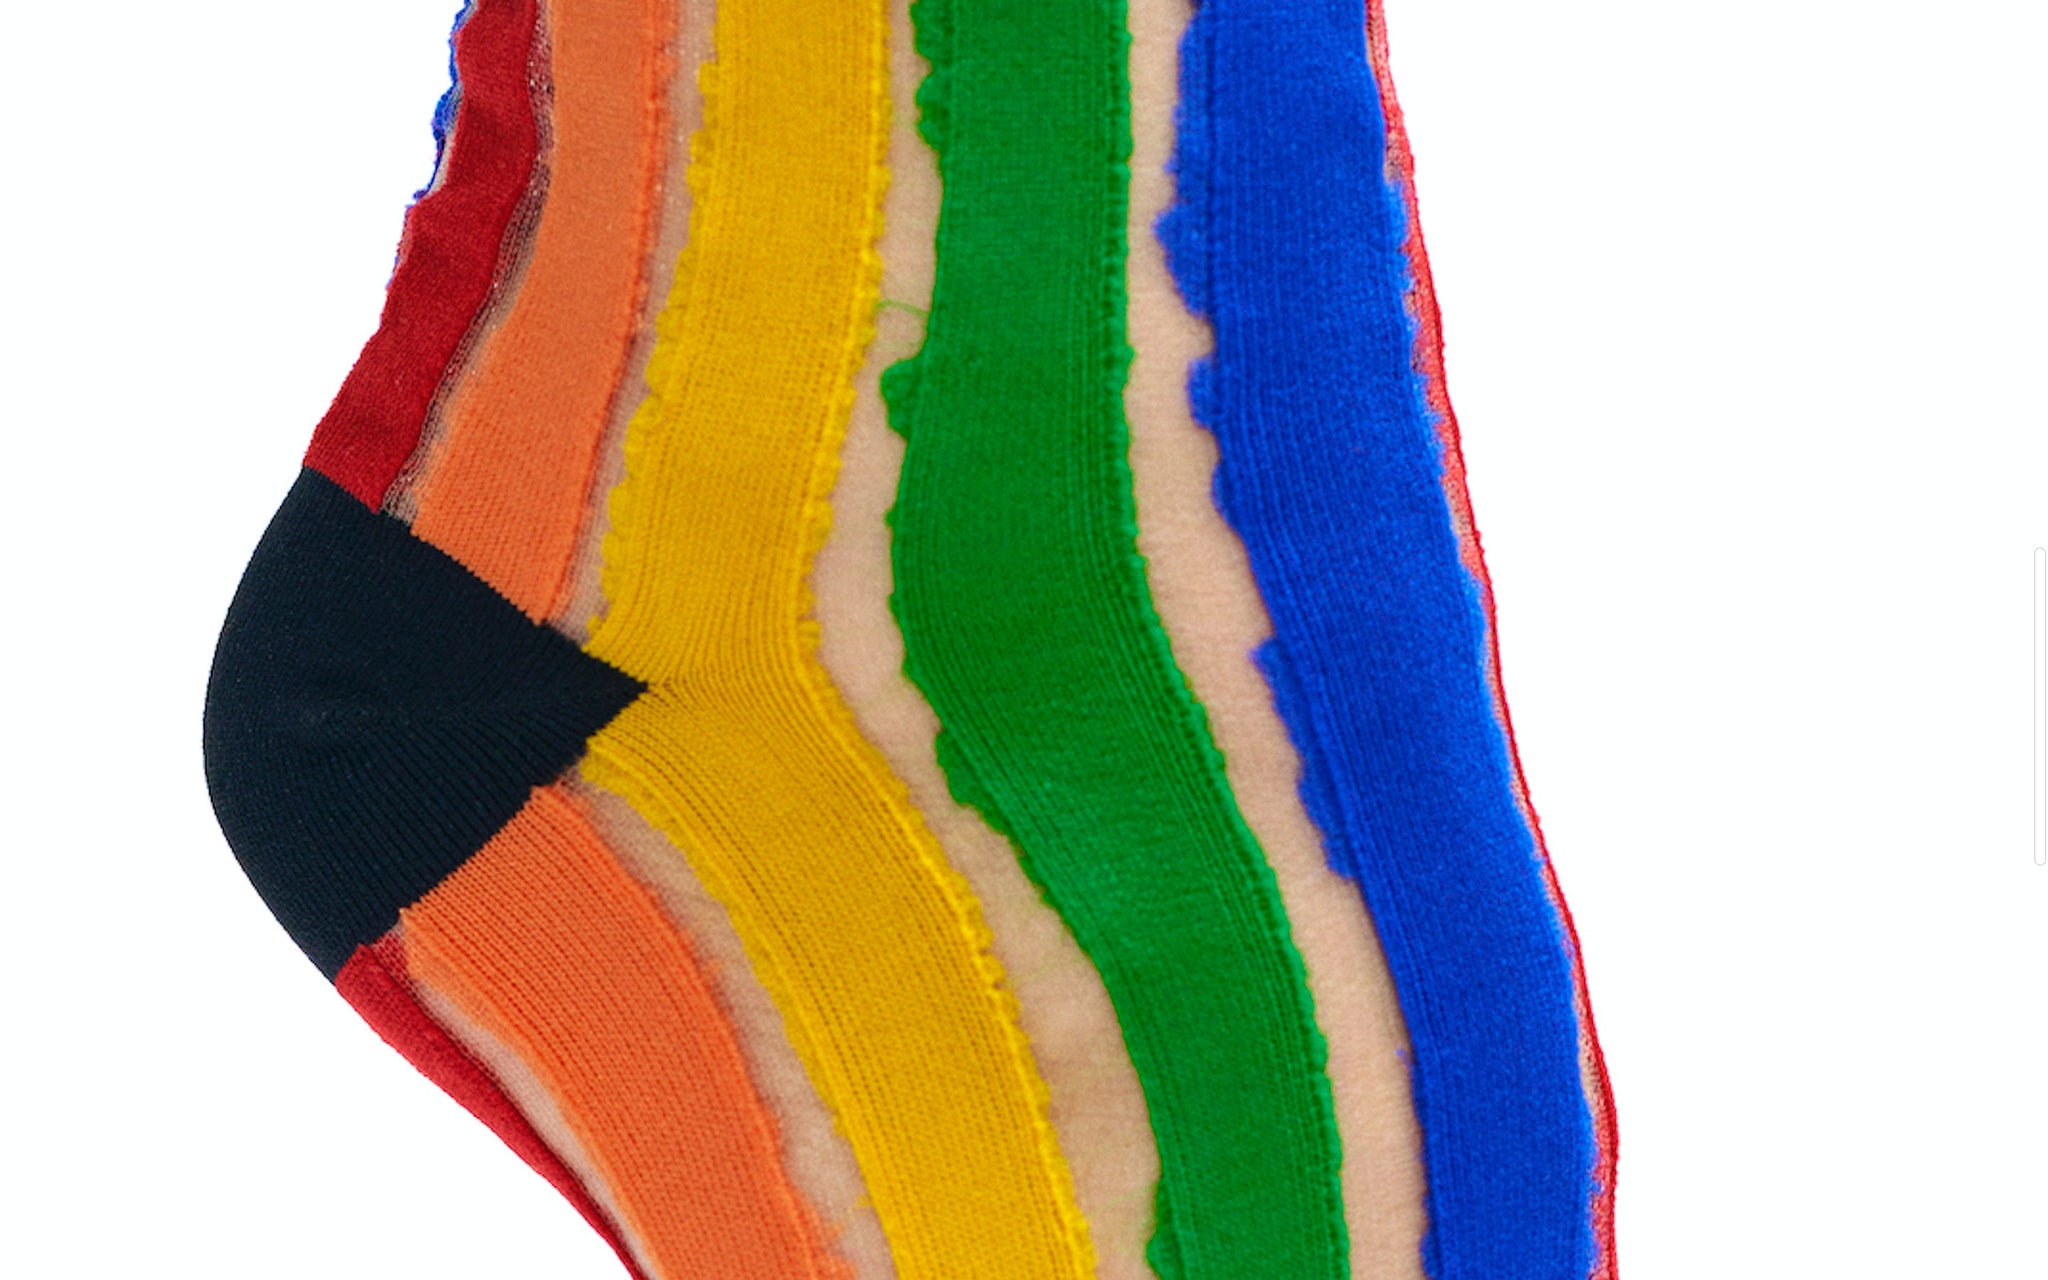 The Clear Rainbow Socks | A Rainbow Striped Sock for the Fab | Cutout Socks in Rainbow Colors | Goose Taffy